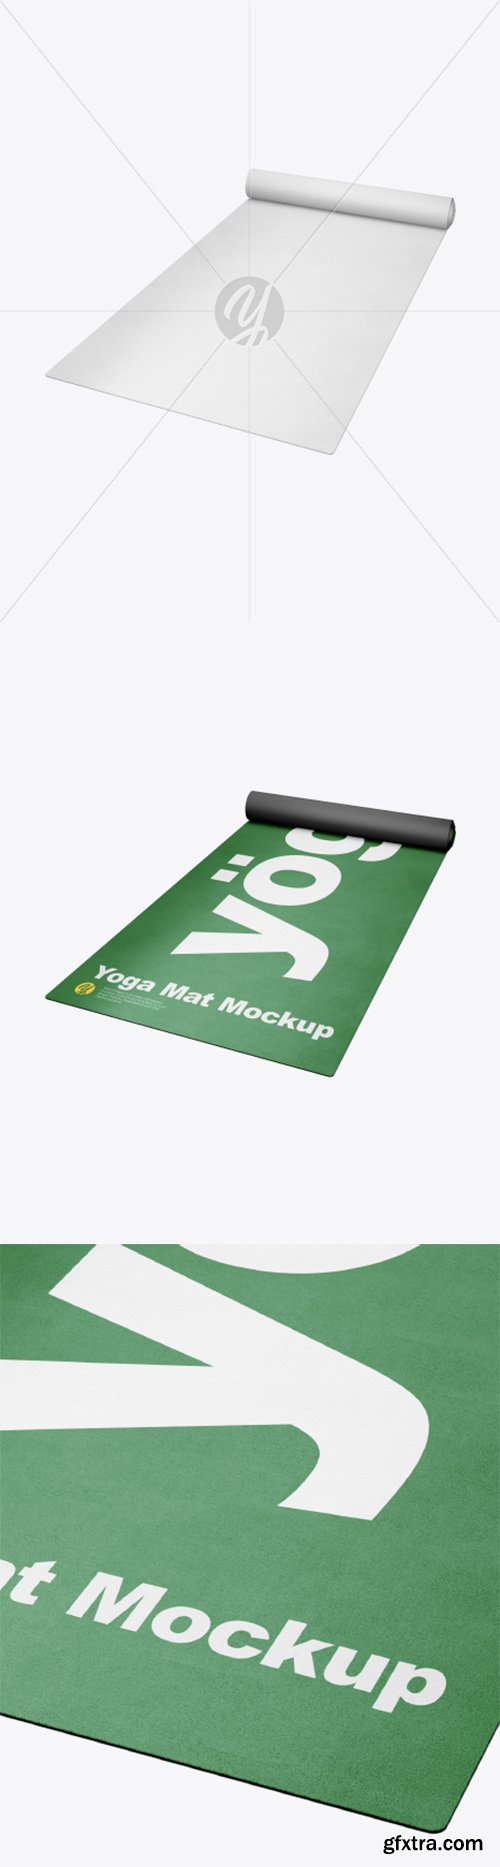 Yoga Mat Mockup - Half SIde View (High-Angle Shot) 28749